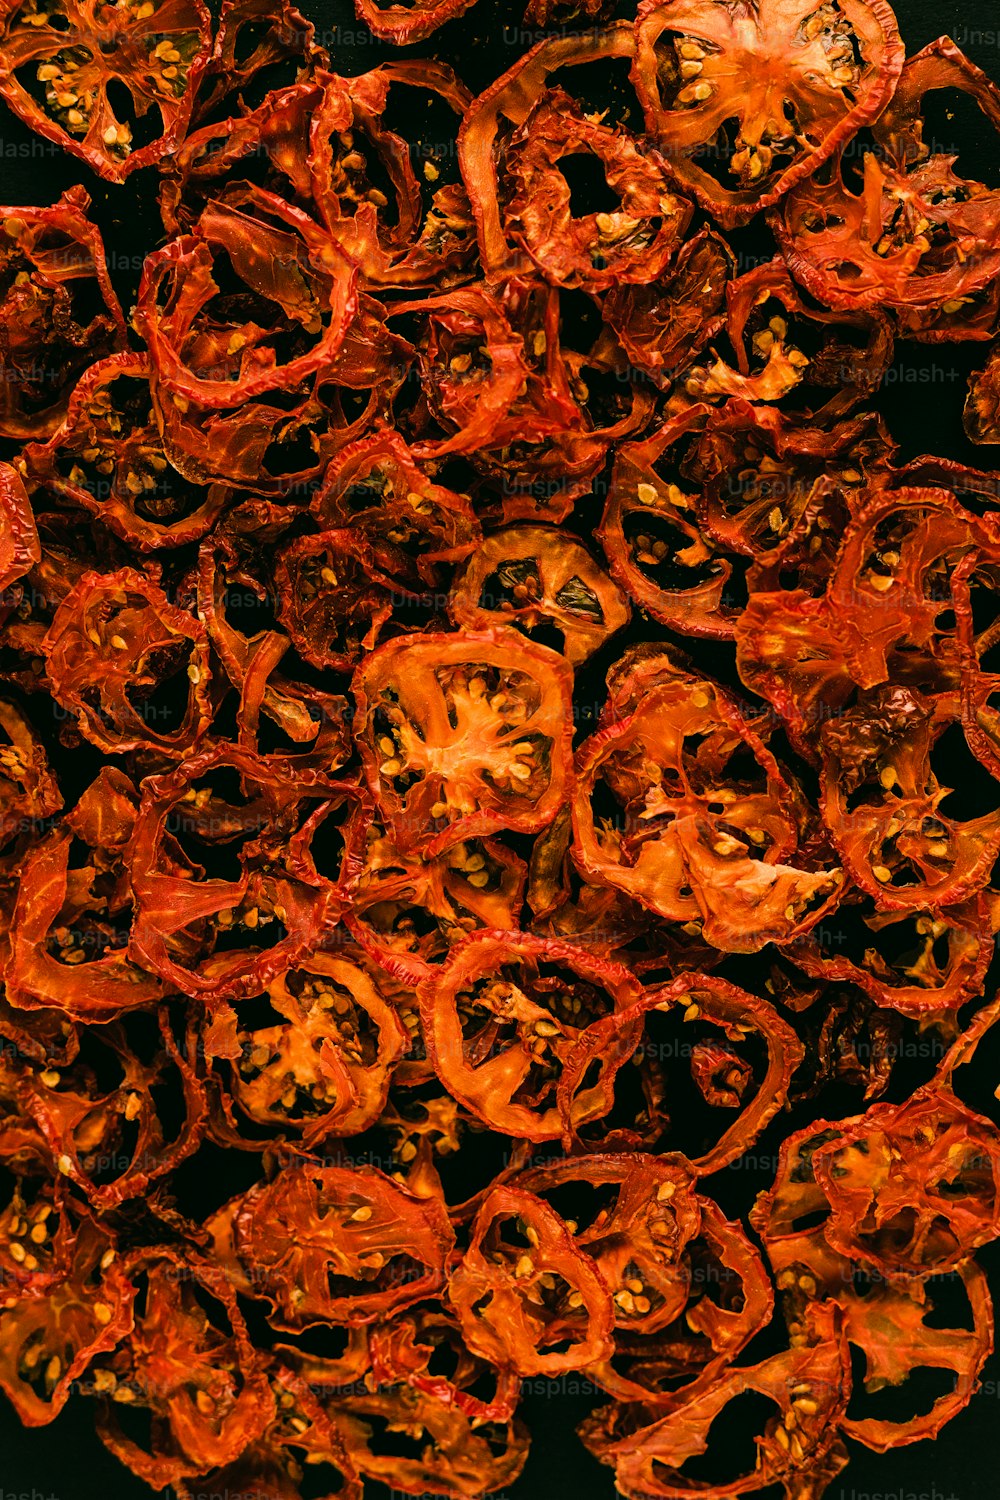 un tas de poivrons rouges séchés sur une surface noire